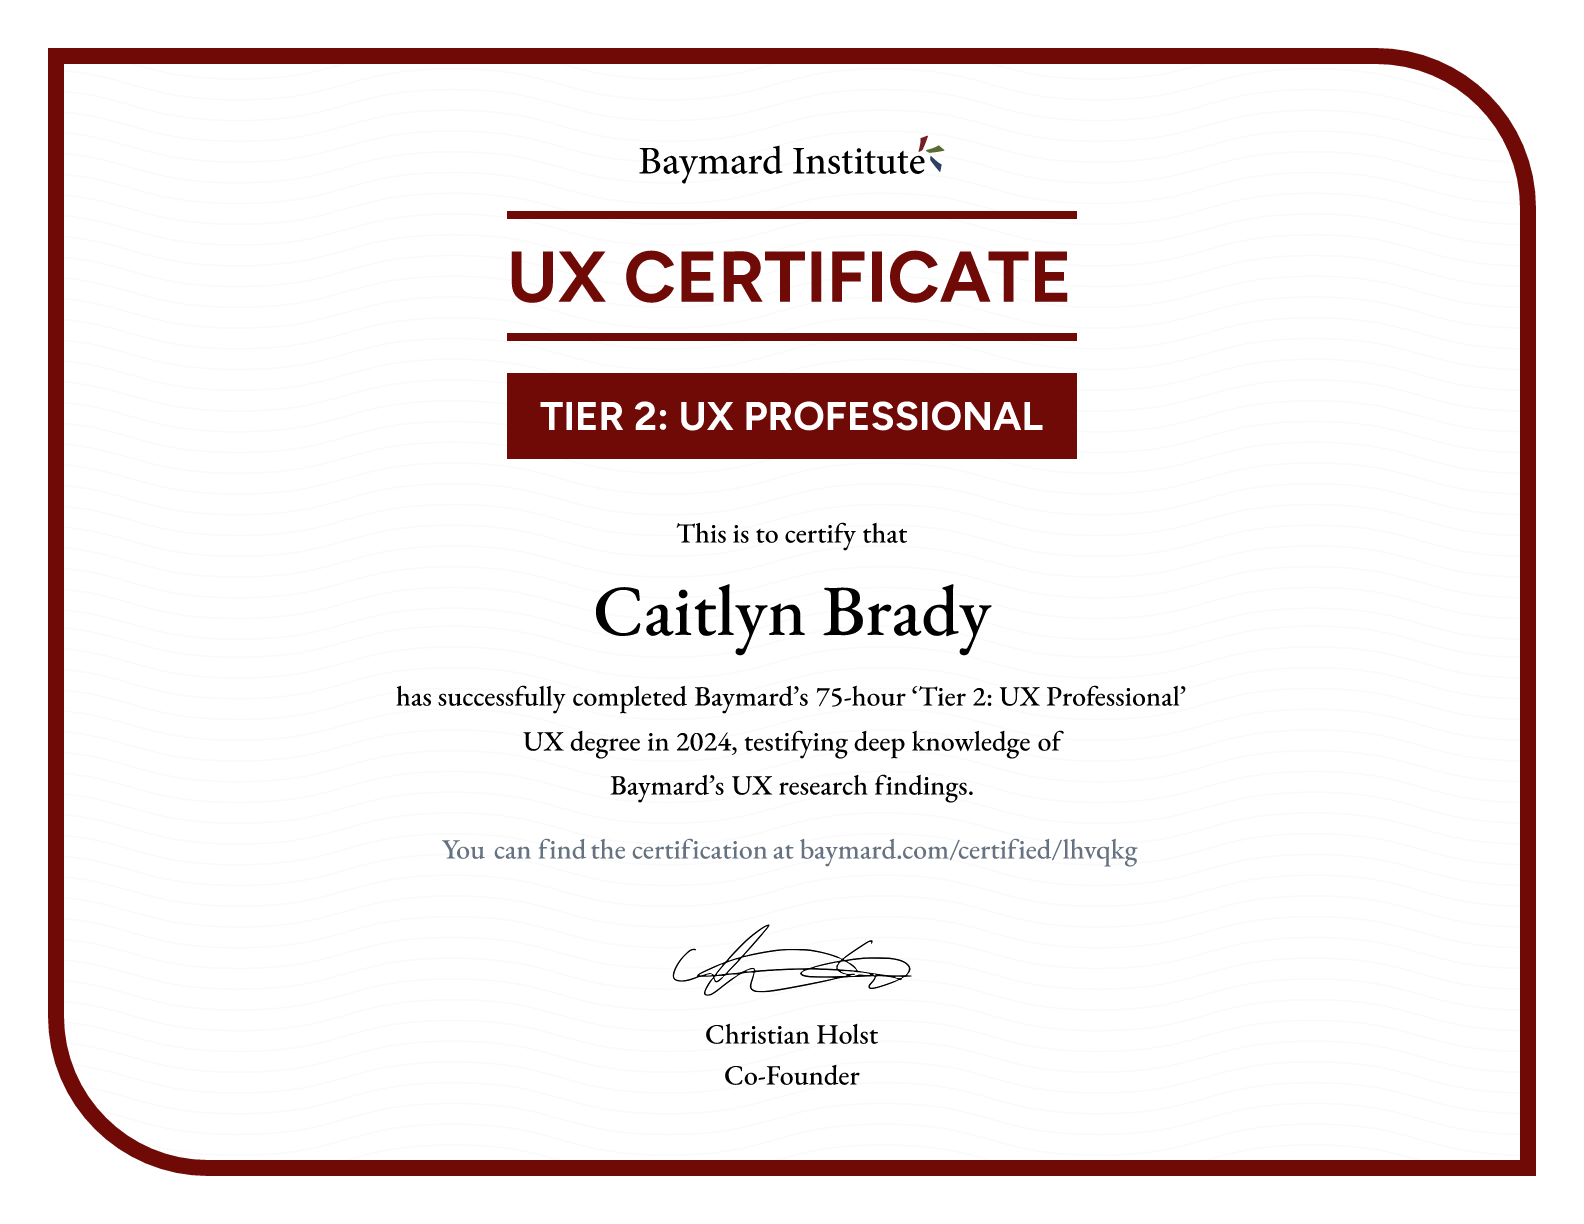 Caitlyn Brady’s certificate